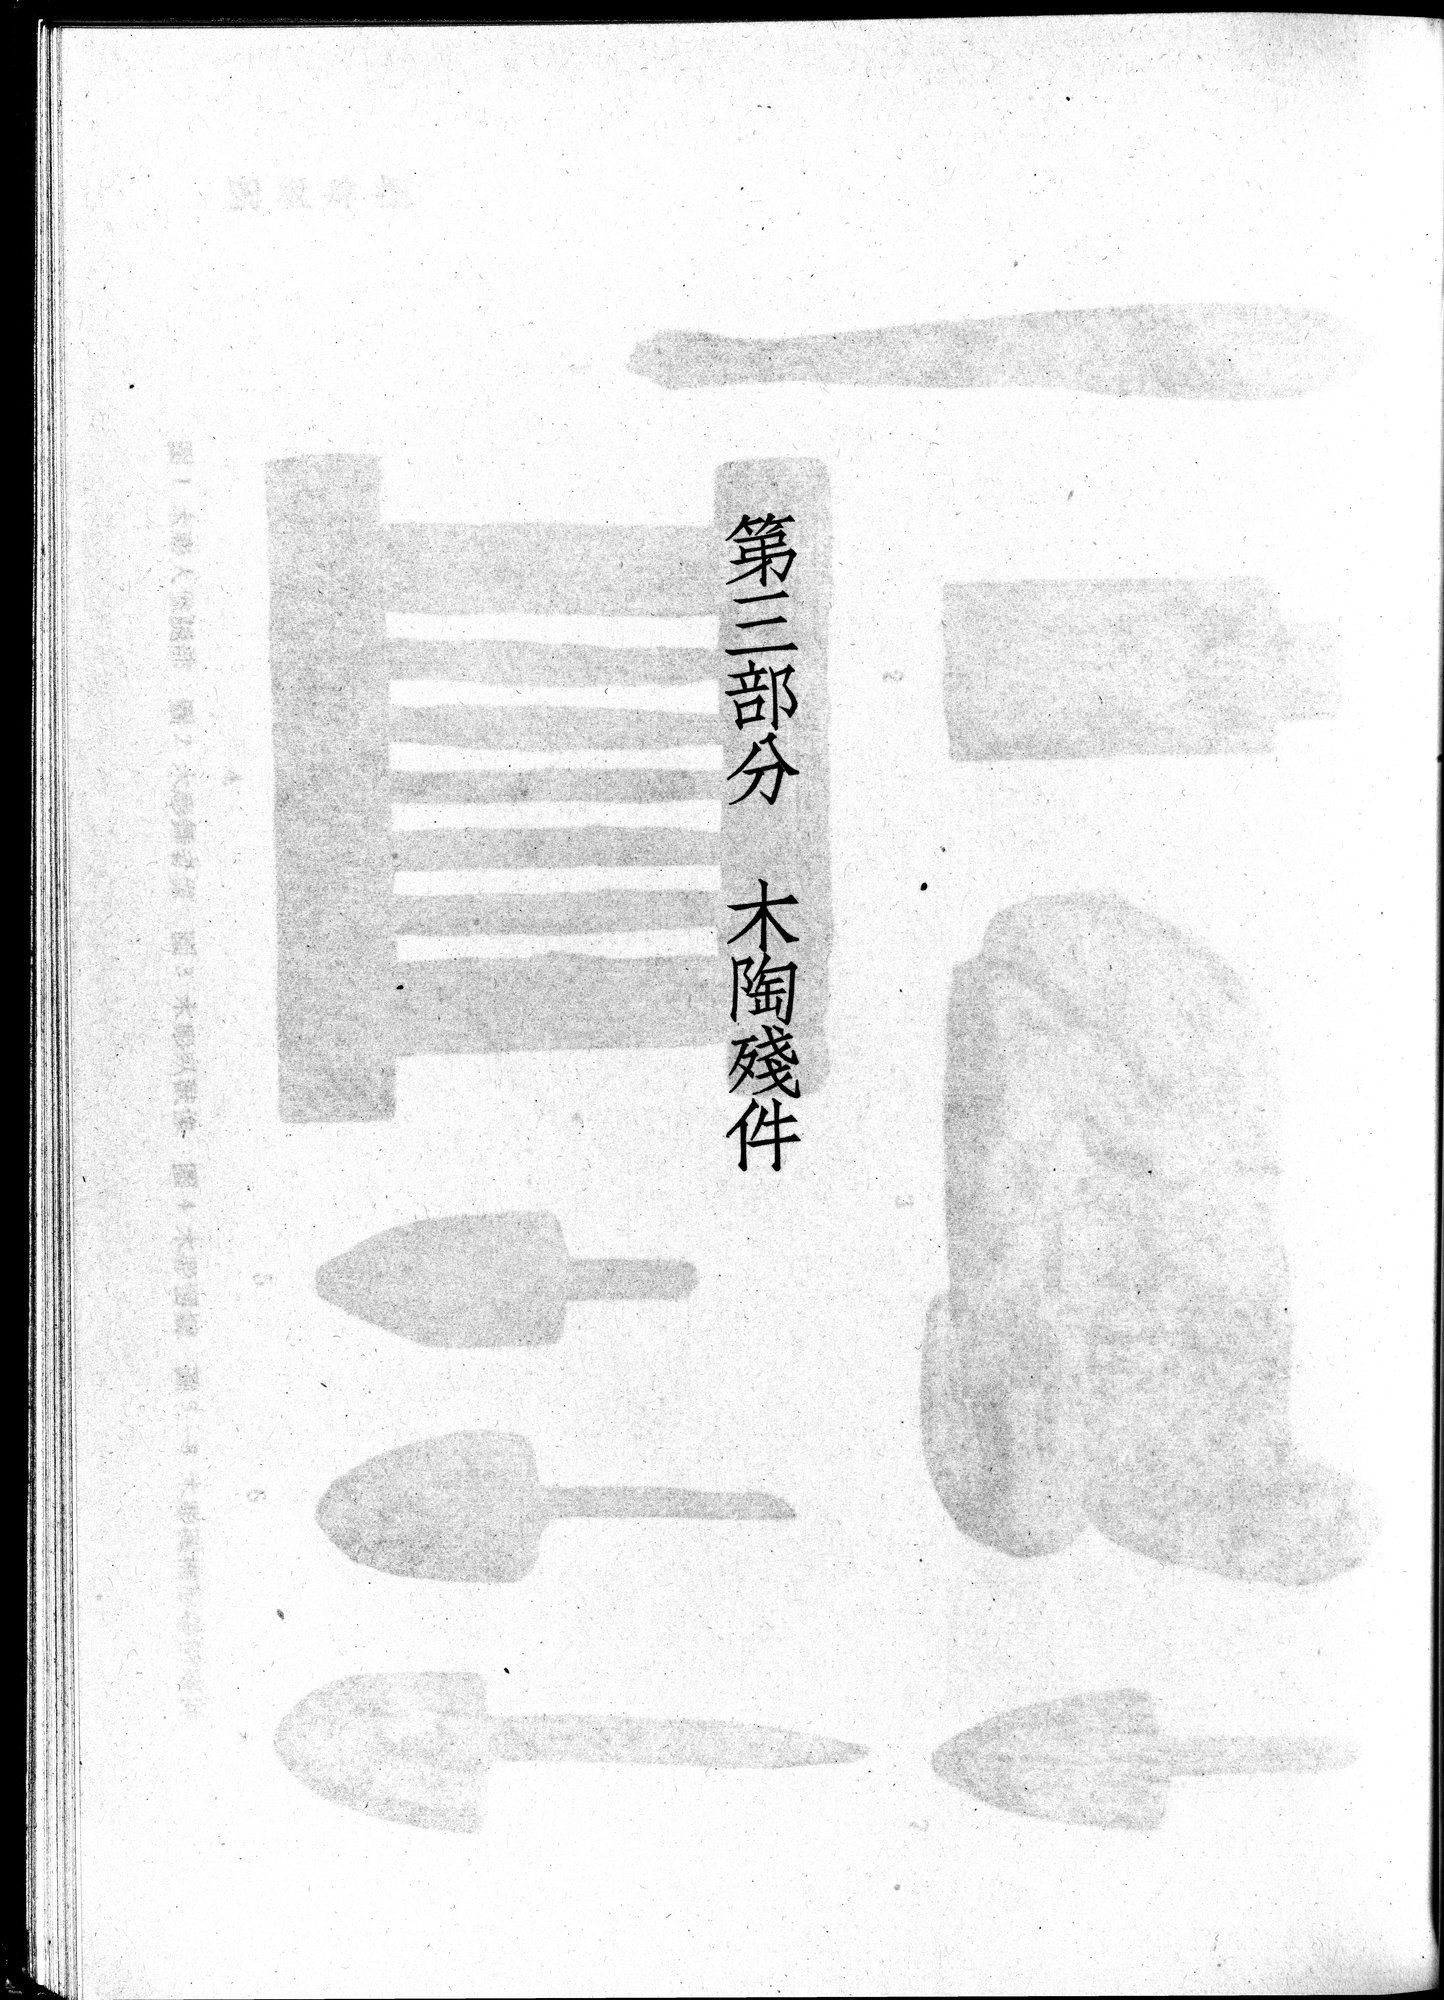 塔里木盆地考古記 : vol.1 / 271 ページ（白黒高解像度画像）